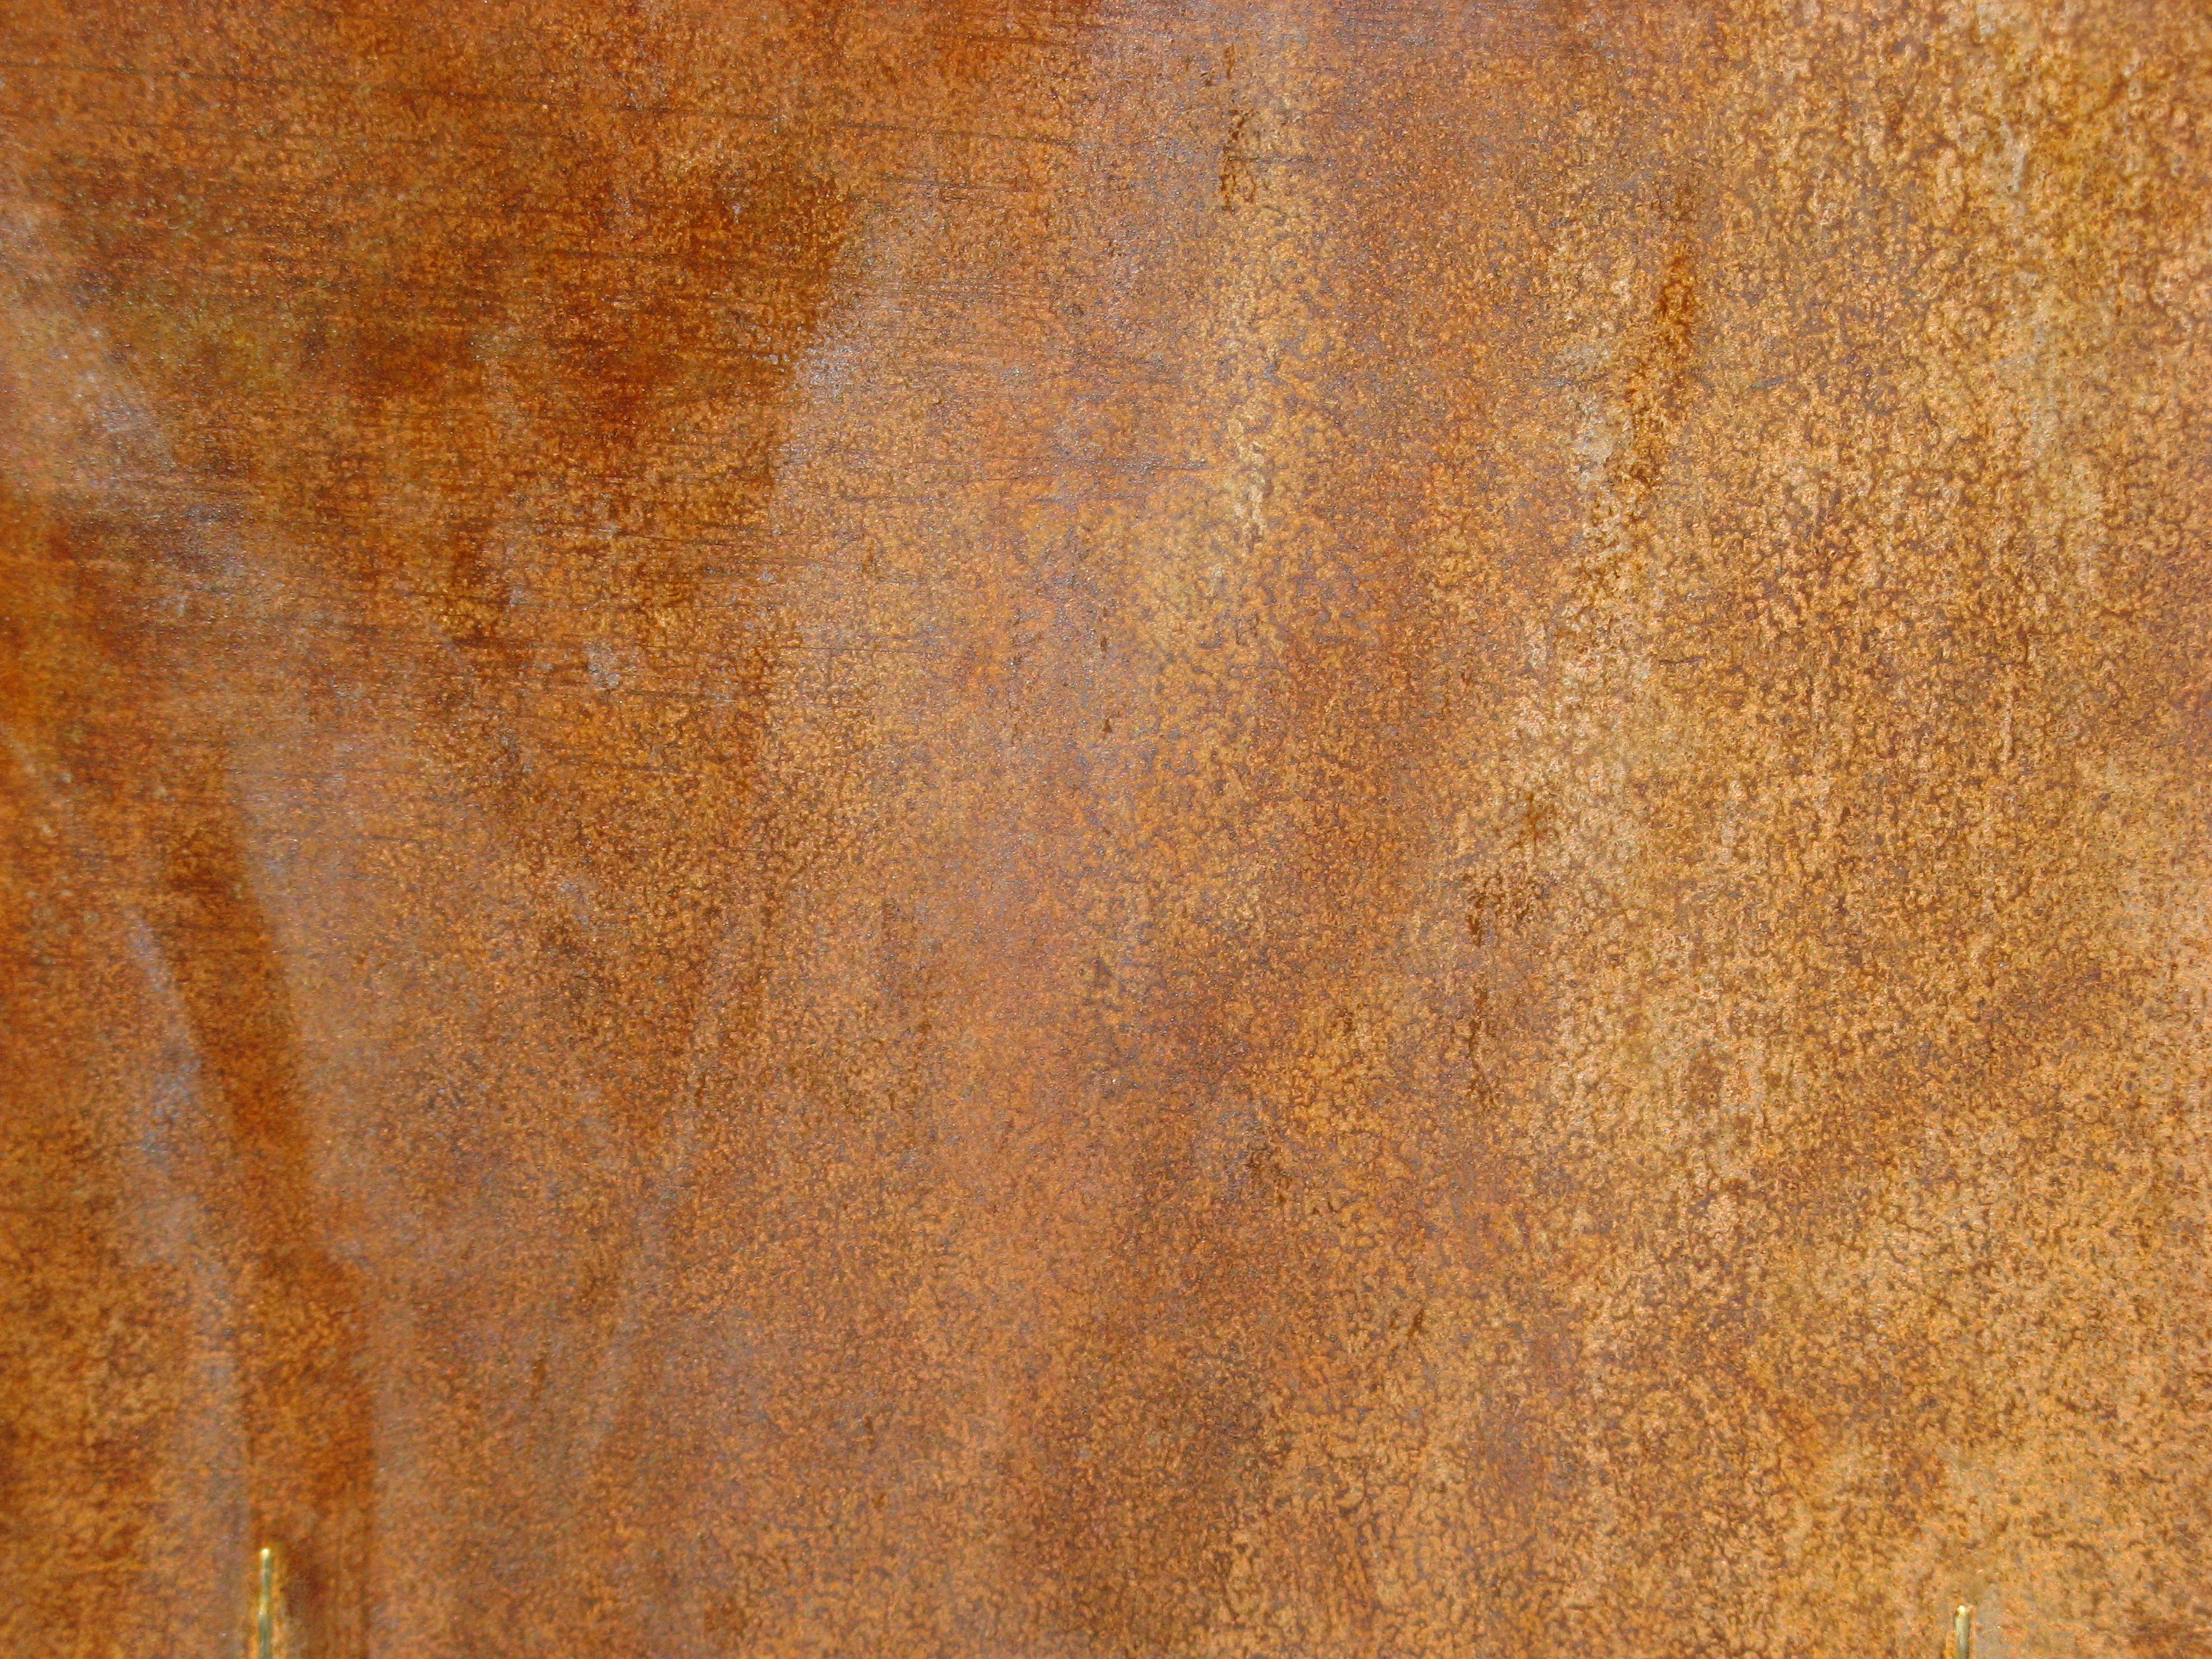 Copper rust цвет фото 106